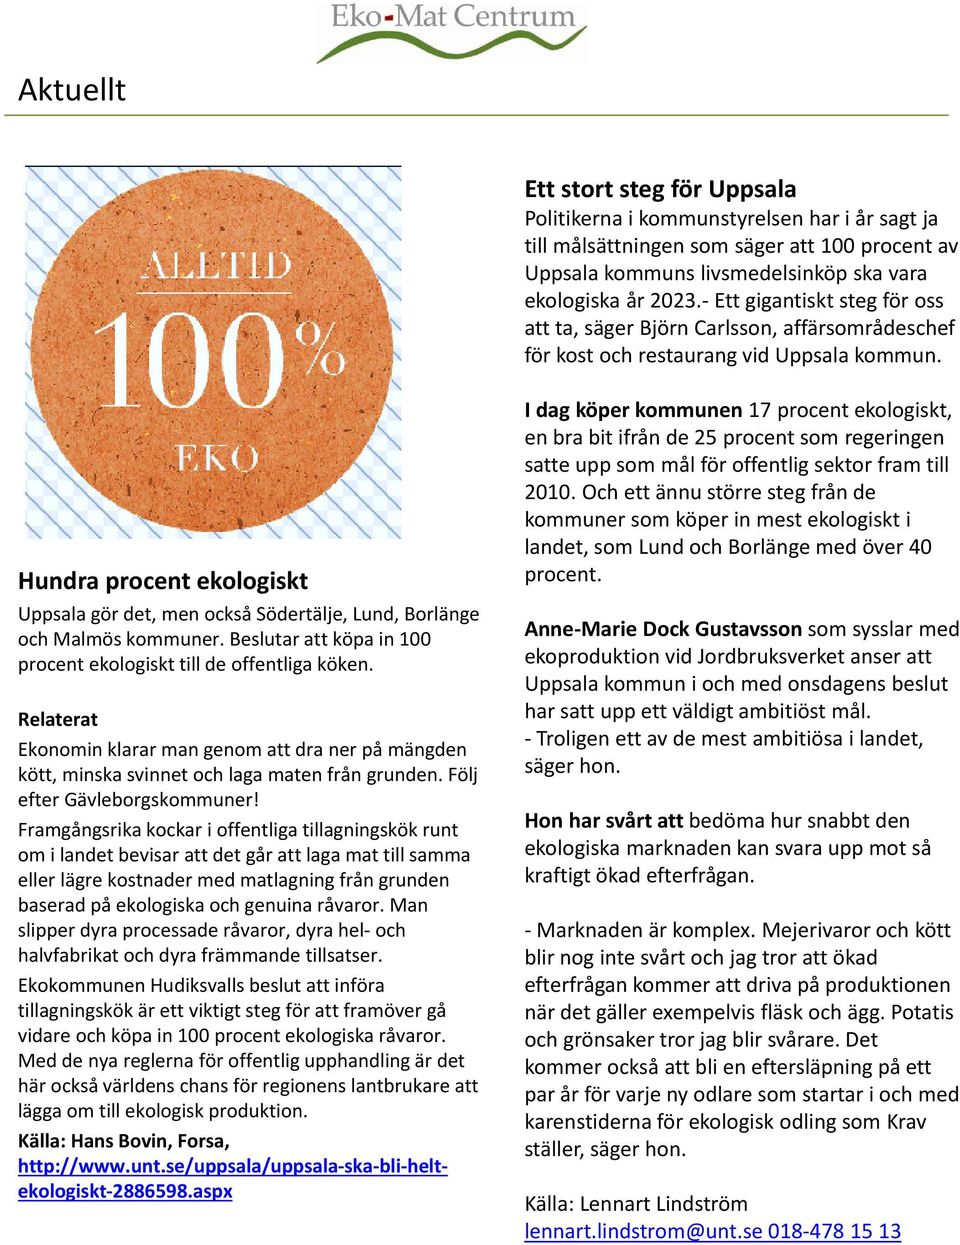 Hundra procent ekologiskt Uppsala gör det, men också Södertälje, Lund, Borlänge och Malmös kommuner. Beslutar att köpa in 100 procent ekologiskt till de offentliga köken.